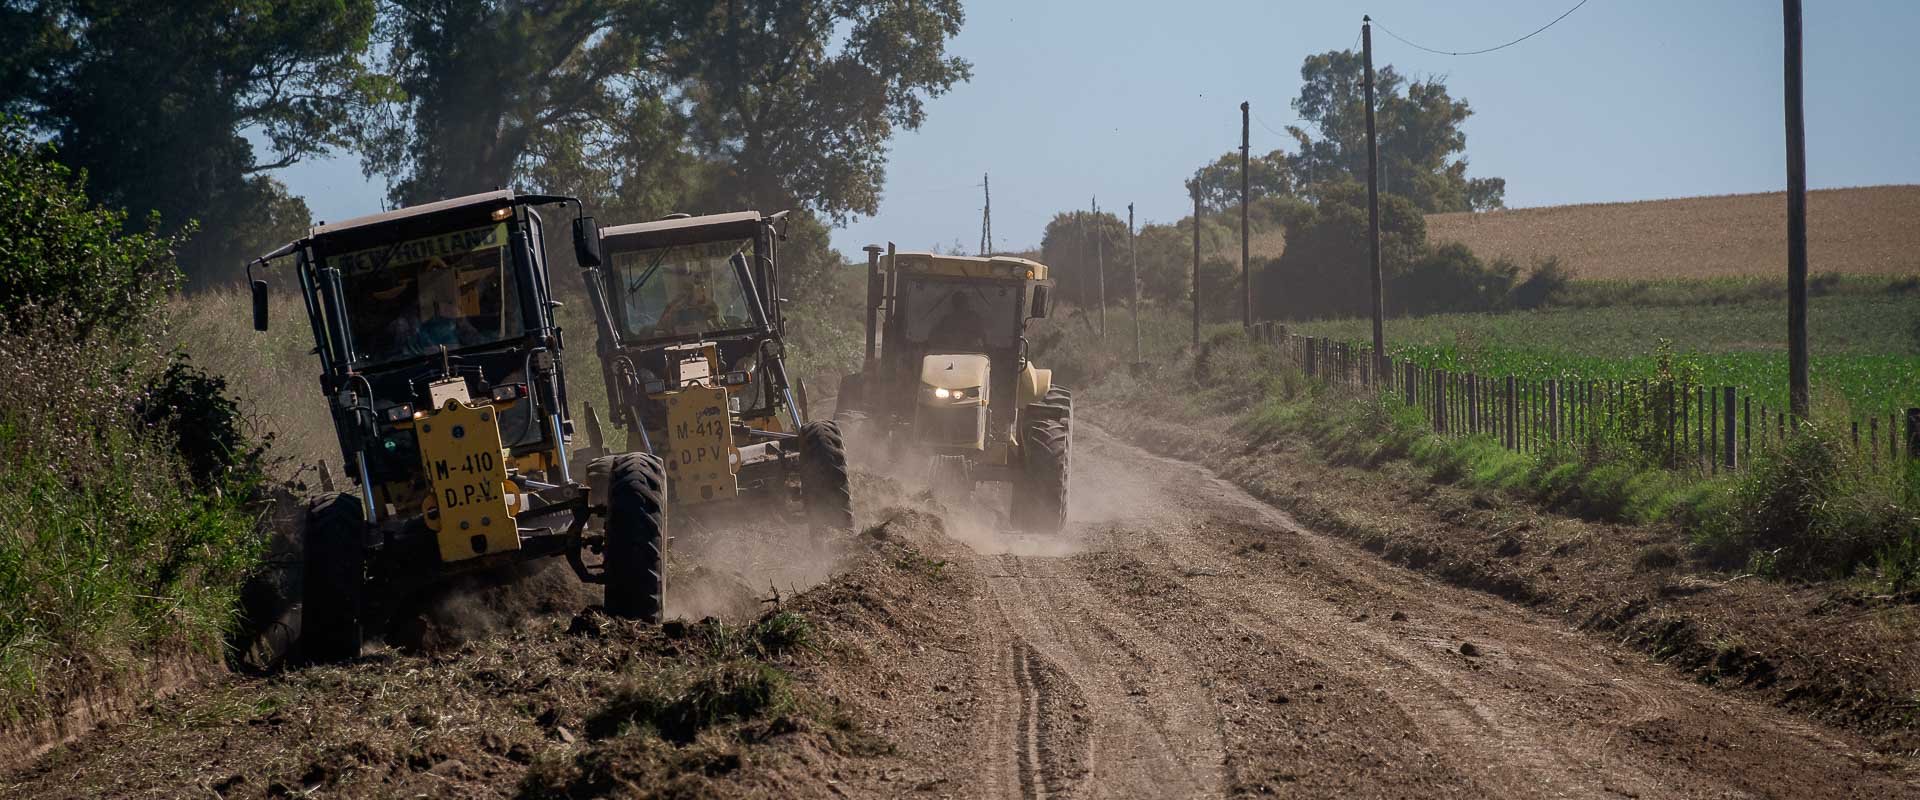 Mejoran un camino rural que conecta las rutas 12 y 11 entre los departamentos Nogoyá y Victoria